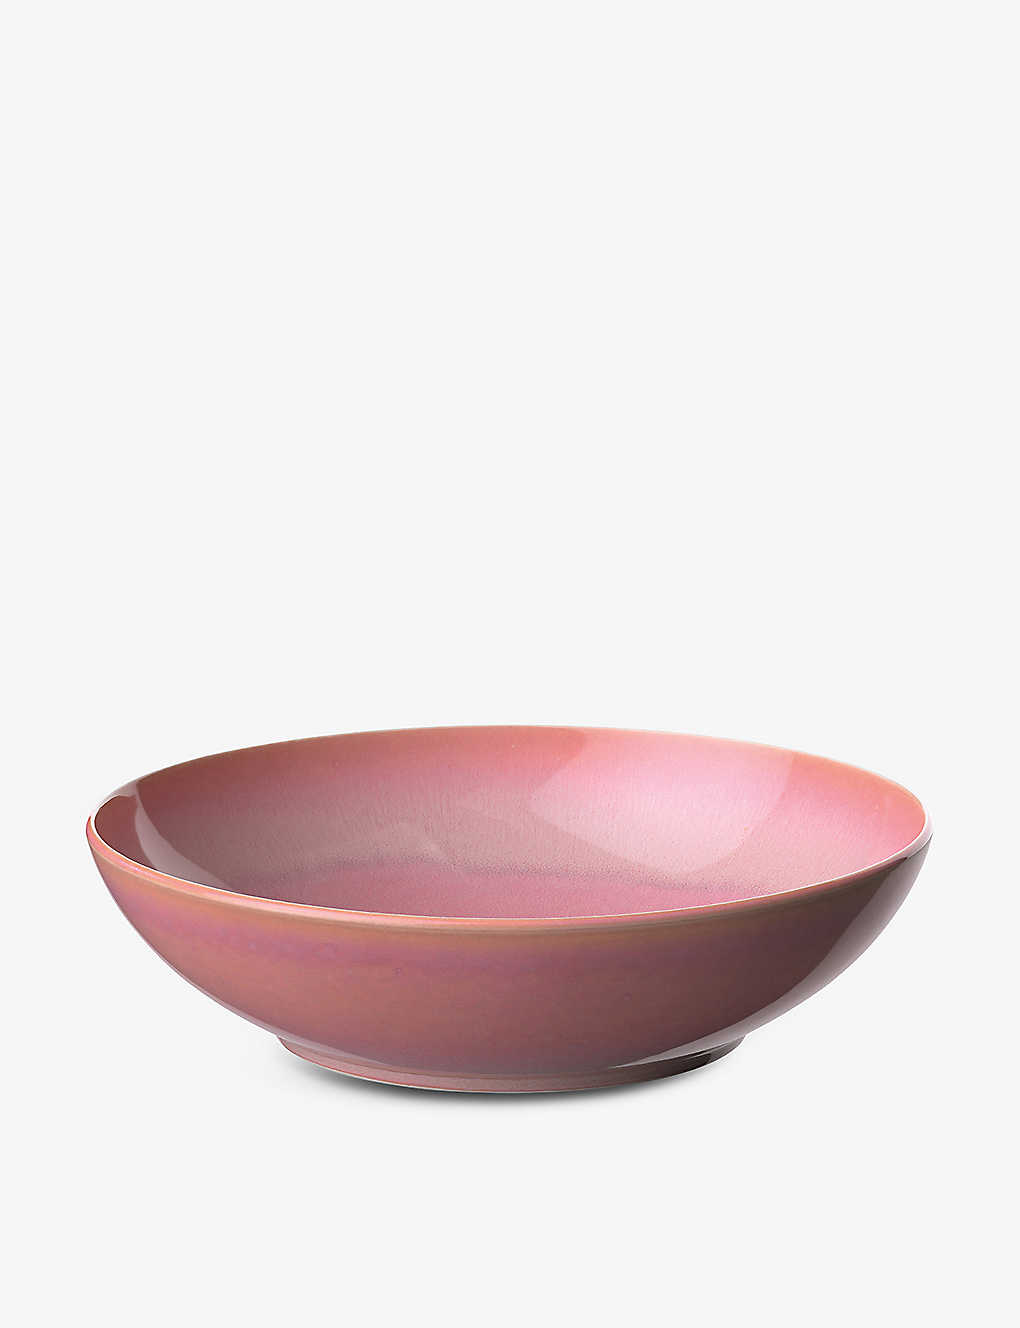 Villeroy & Boch Perlemor Glazed Porcelain Bowl 26cm